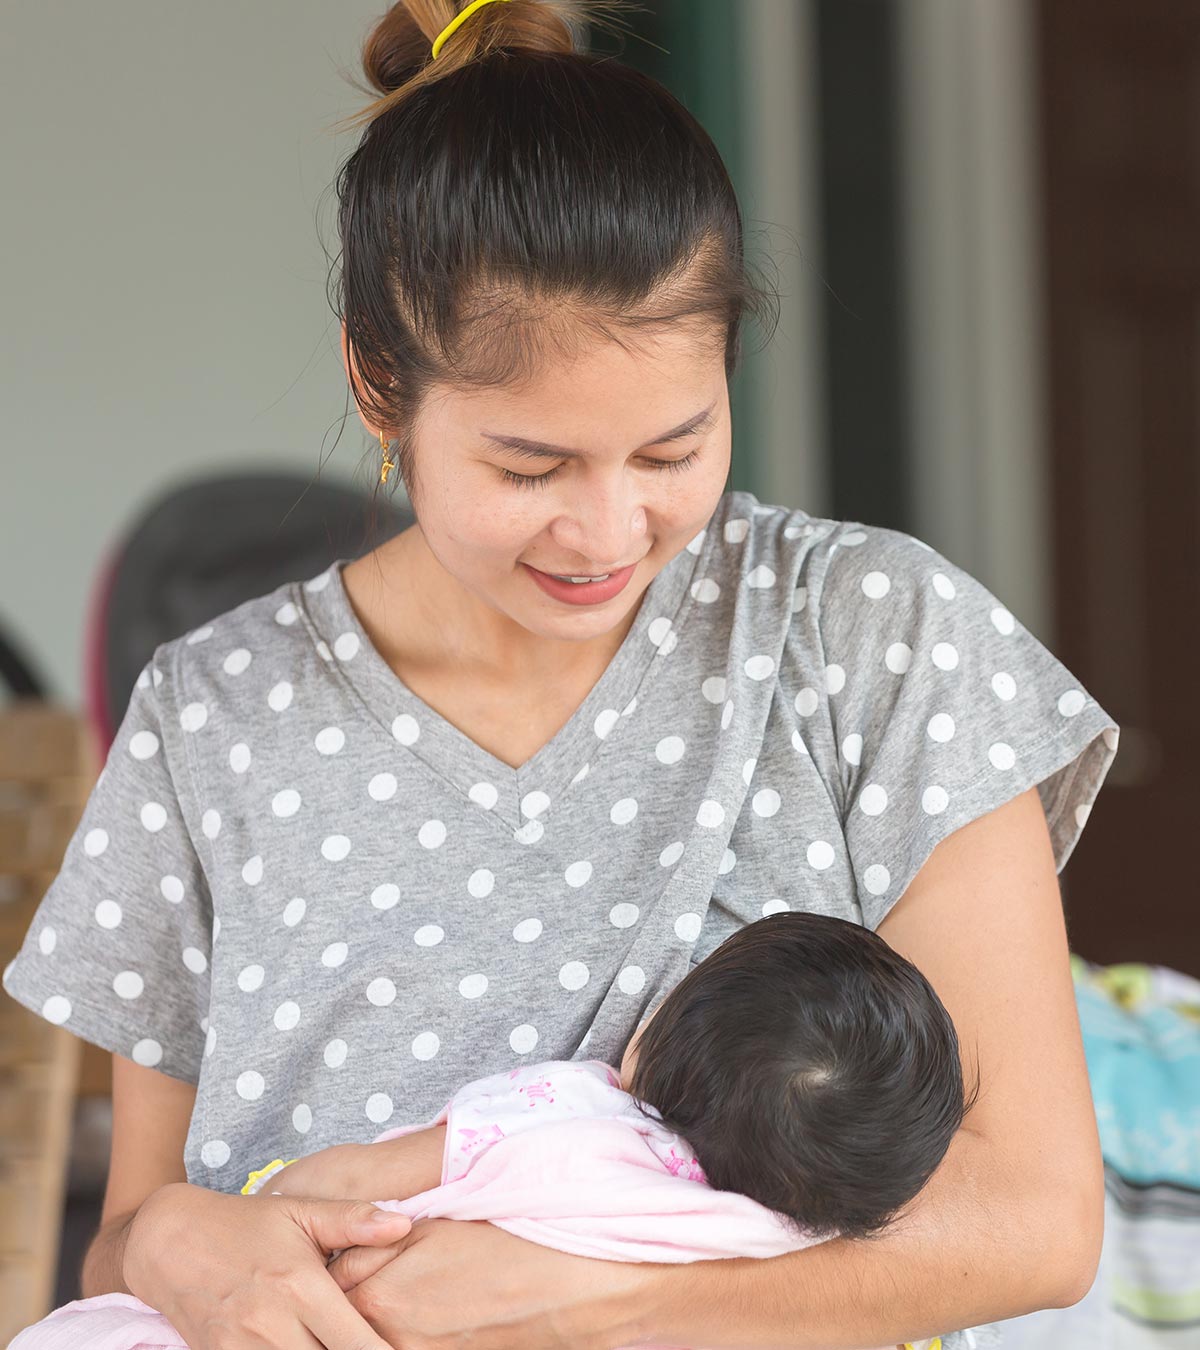 बच्चे को दूध पीते समय पसीना आना: कारण व कम करने के उपाय | Baby Sweating During Breastfeeding In Hindi